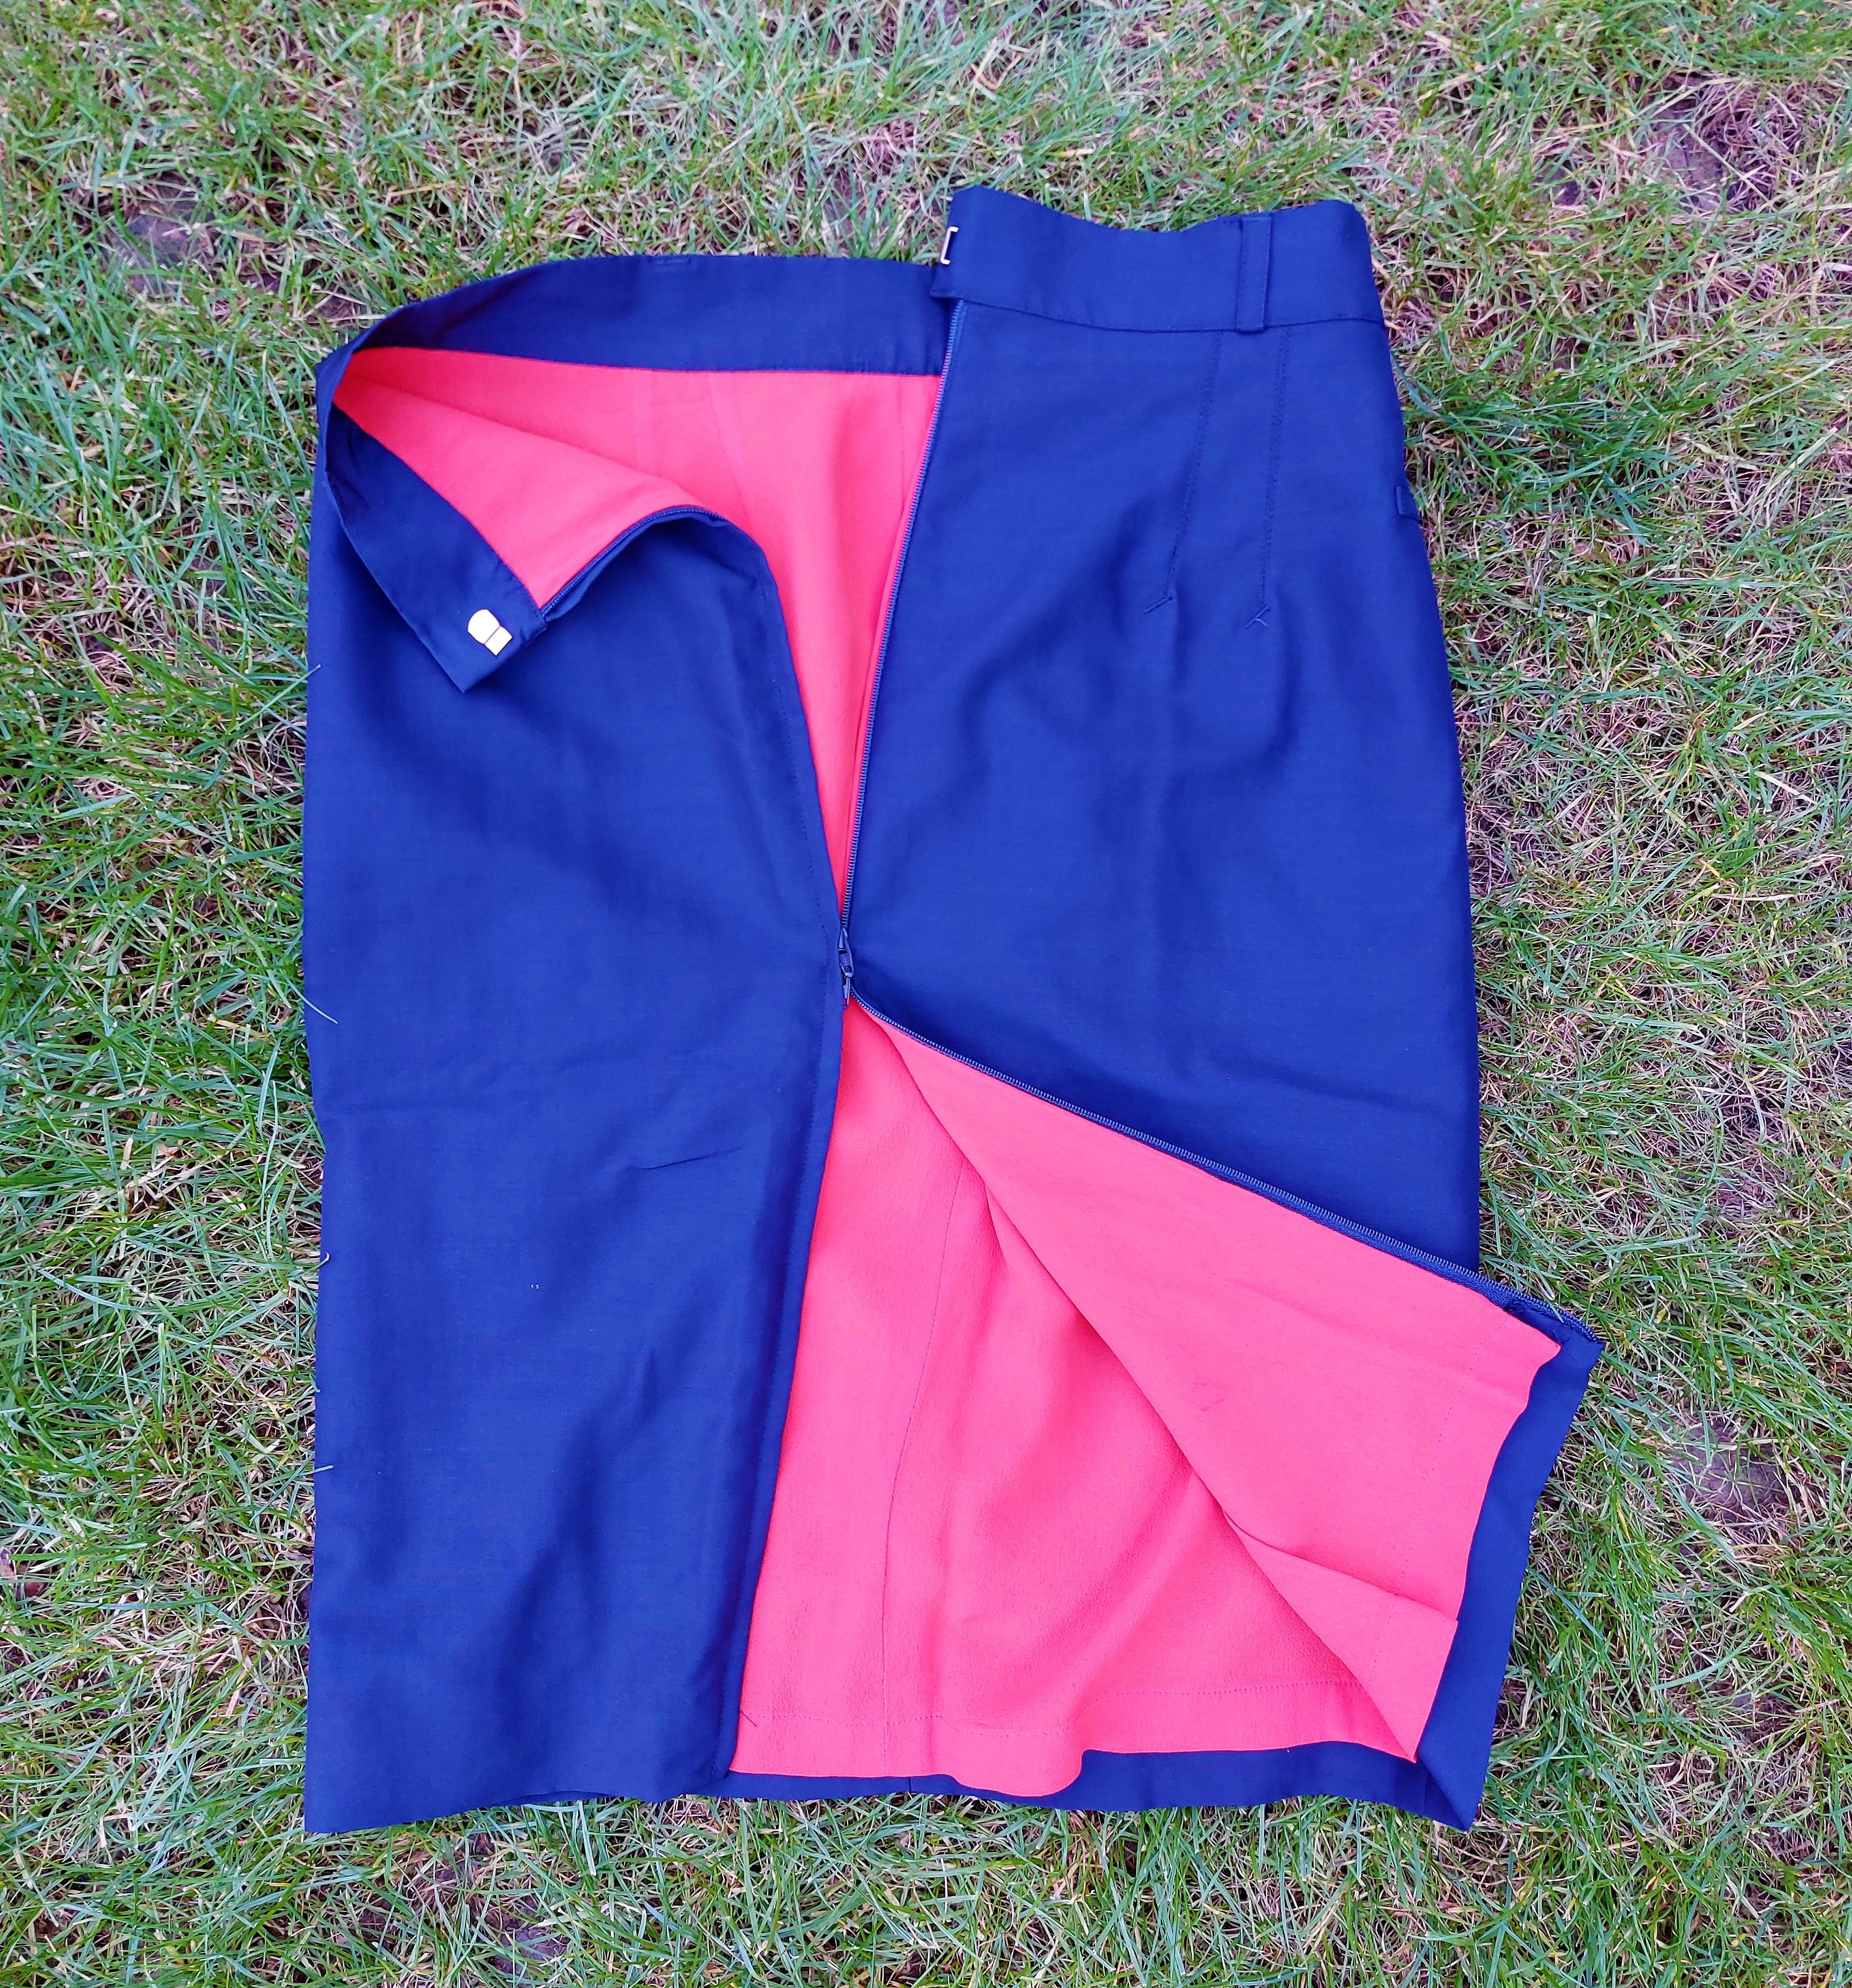 Jean Paul Gaultier Classique Blue Navy Orange Blazer Formal Elegant Vintage 90's 1990 Rare Iconic Jacket Skirt Suit Ensemble Set

Excellent condition, rare piece!
Fits XS/S, the model’s size is XS on the photos.
Measurements:
Skirt:

Waist: 34 cm -